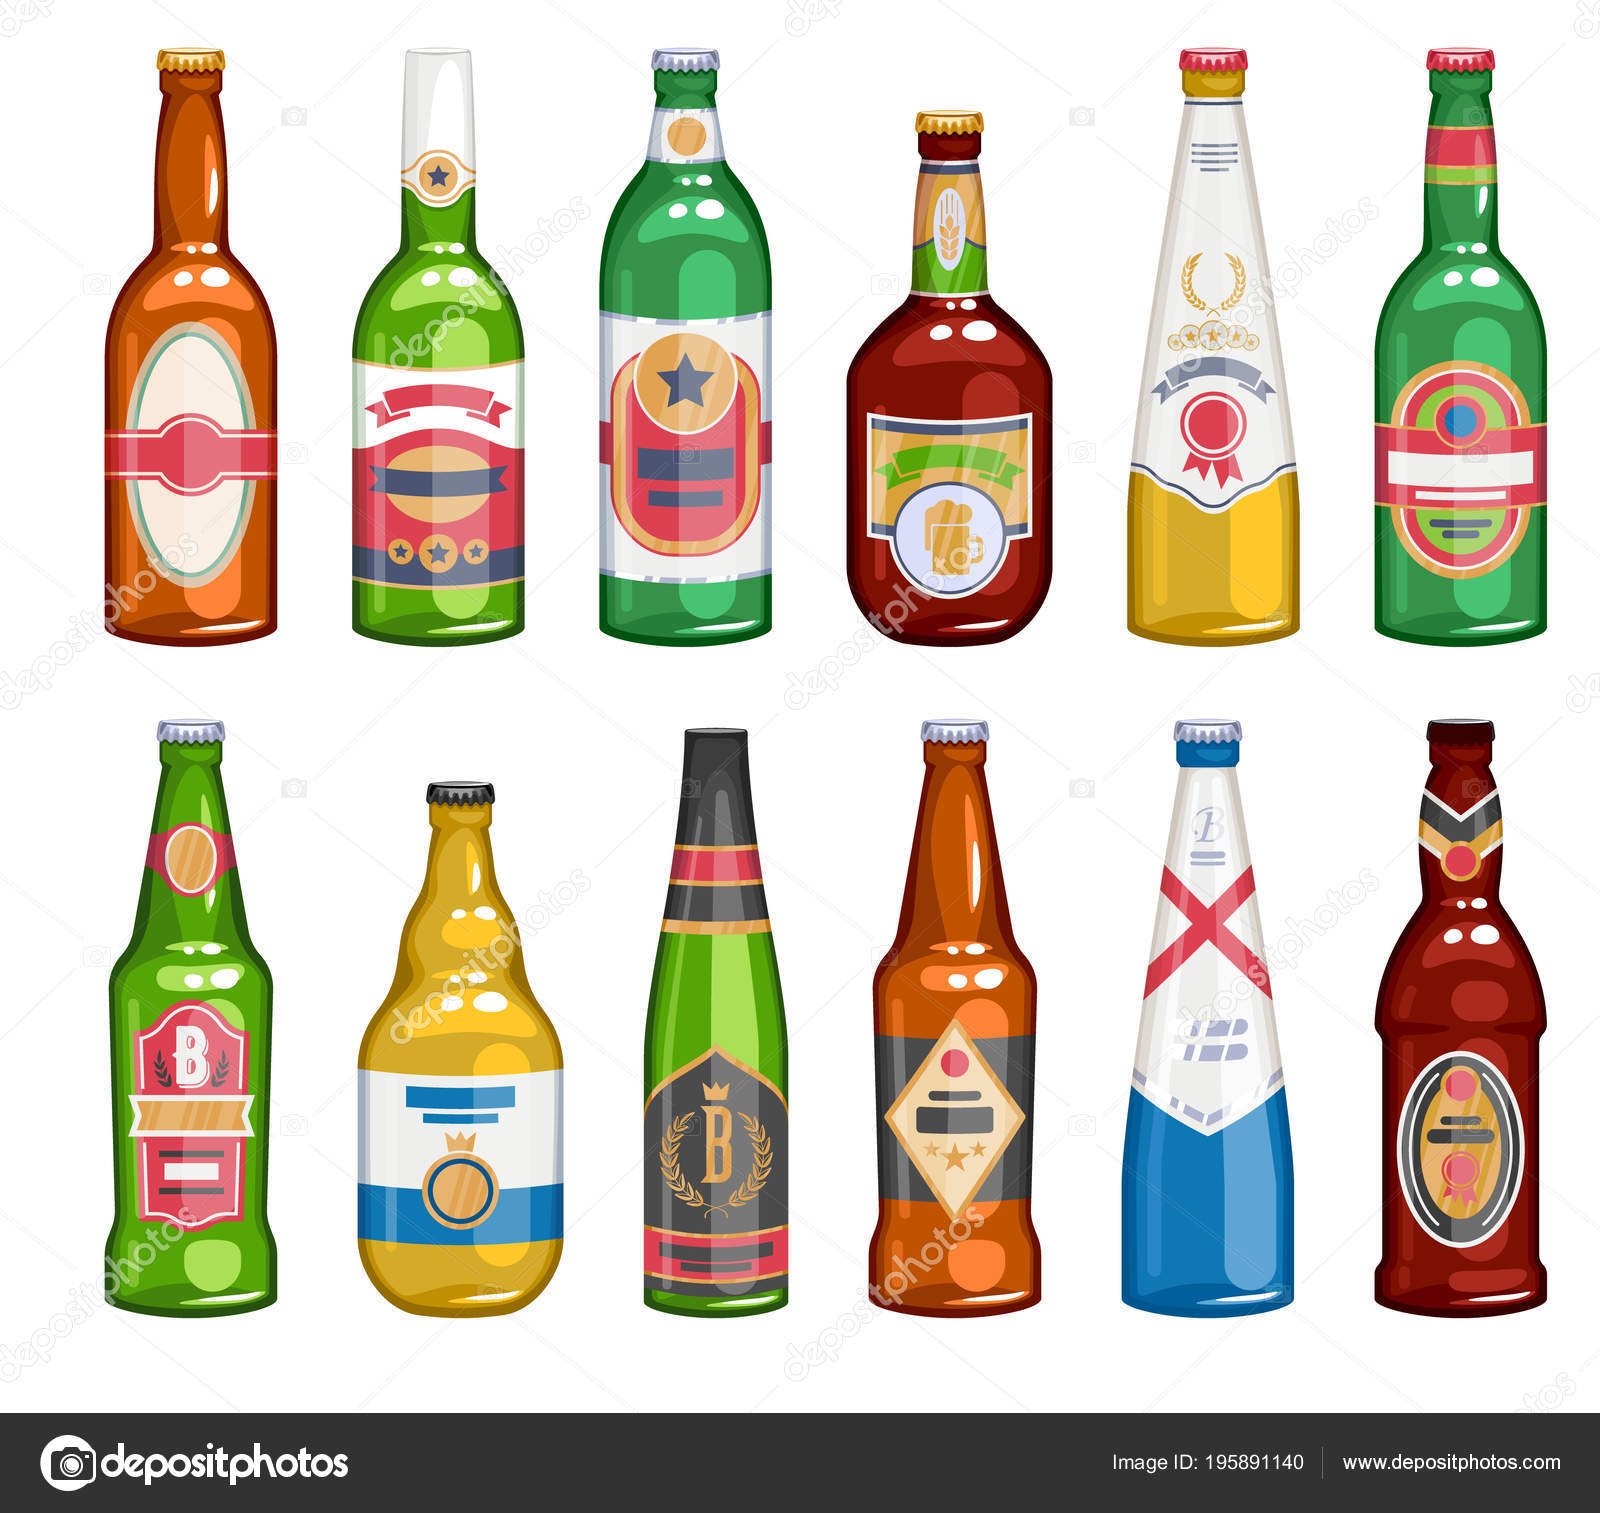 sjæl Hound Station Beer bottles icons set. Stock Vector Image by ©rea_molko #195891140